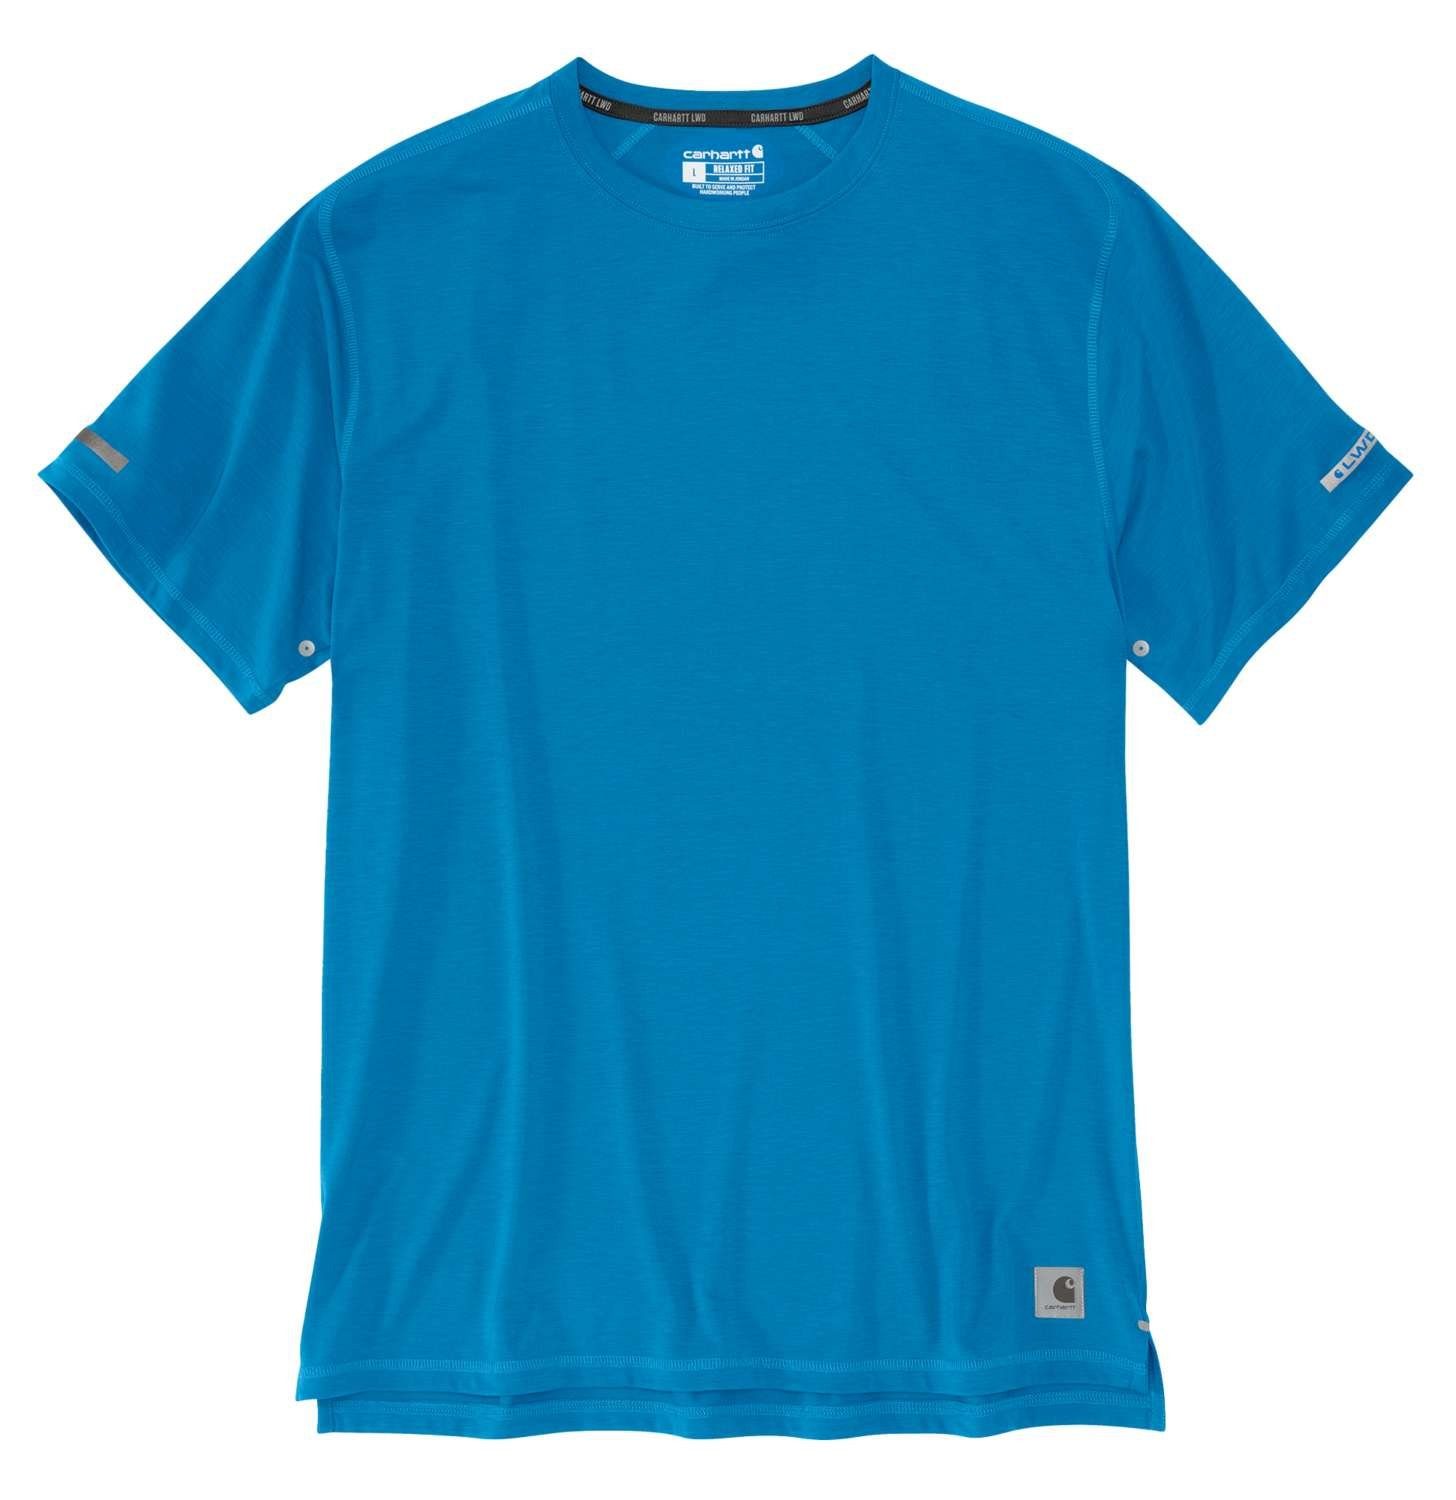 Carhartt T-Shirt Carhartt Herren T-Shirt Extremes Relaxed Fit Adult marine blue